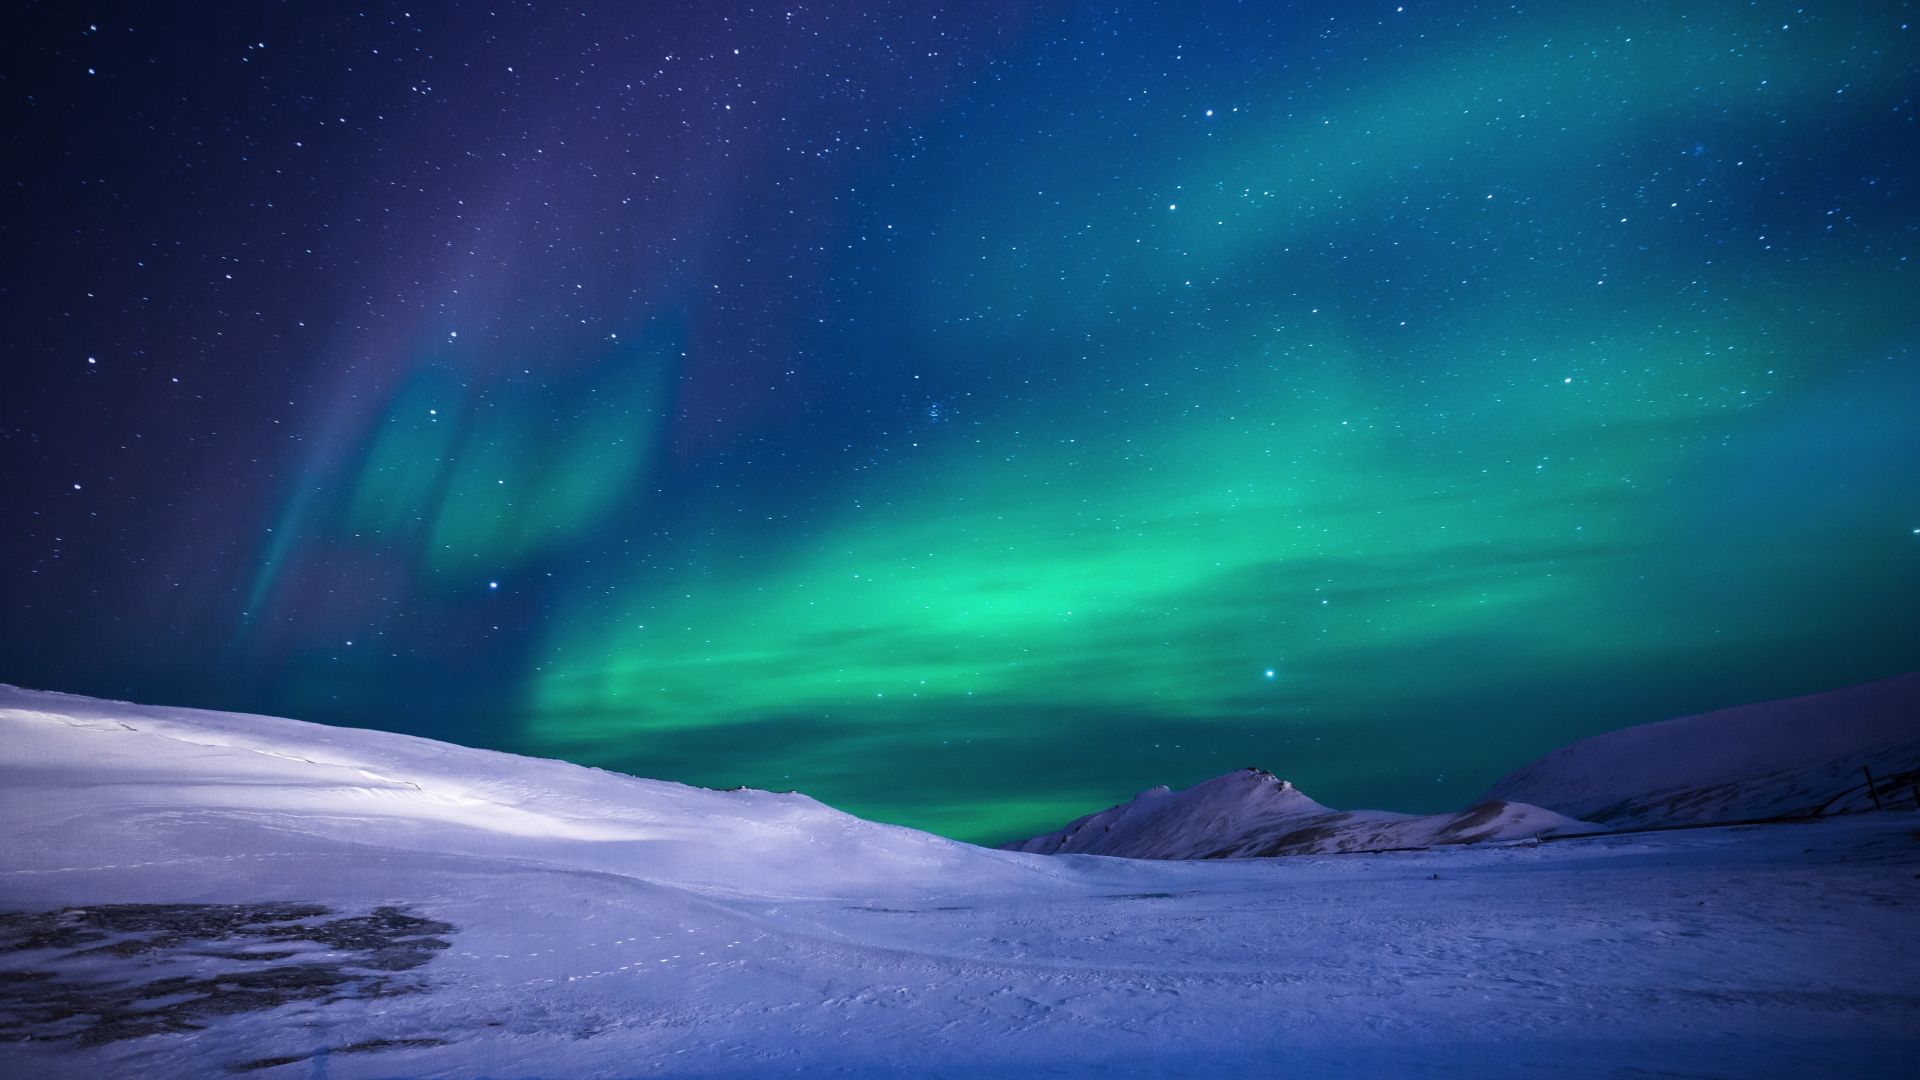 Aurora Borealis: Khám phá vẻ đẹp kỳ diệu của ánh sáng phía Bắc với hình ảnh Aurora Borealis của chúng tôi. Trải nghiệm thiên nhiên tuyệt vời này ngay trên màn hình của bạn và chiêm ngưỡng vô số màu sắc đẹp mắt.